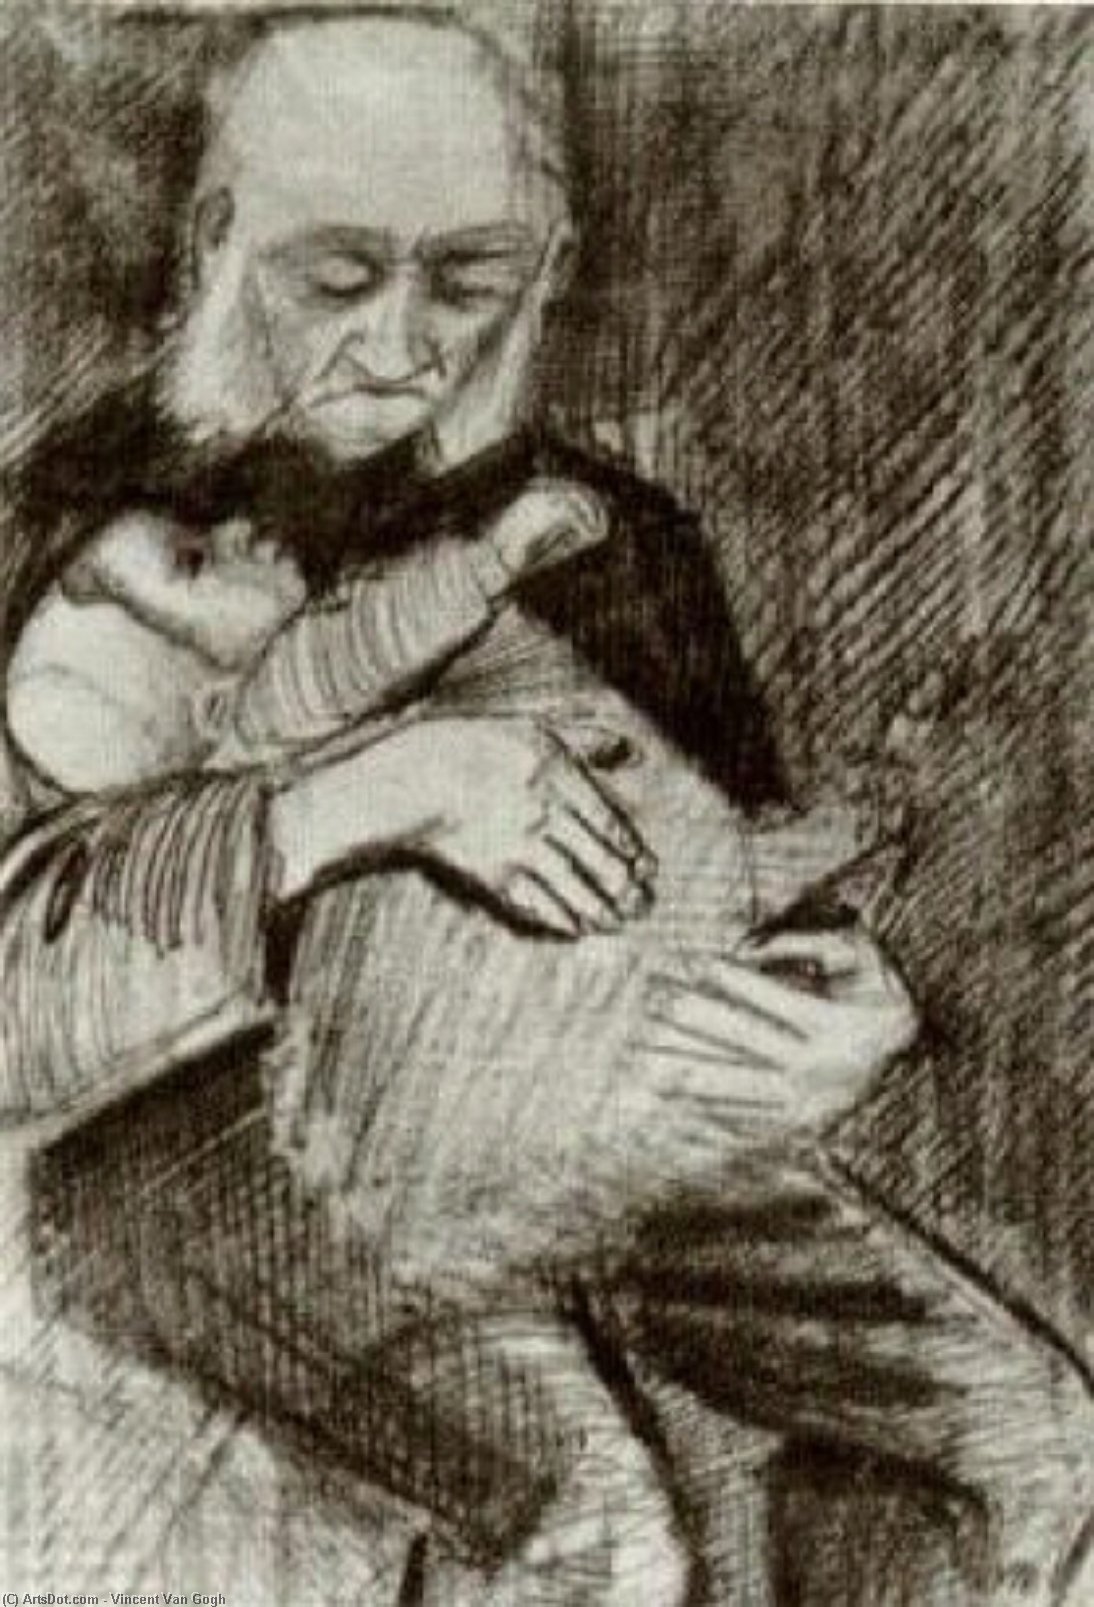 WikiOO.org - אנציקלופדיה לאמנויות יפות - ציור, יצירות אמנות Vincent Van Gogh - Orphan Man with a Baby in his Arms